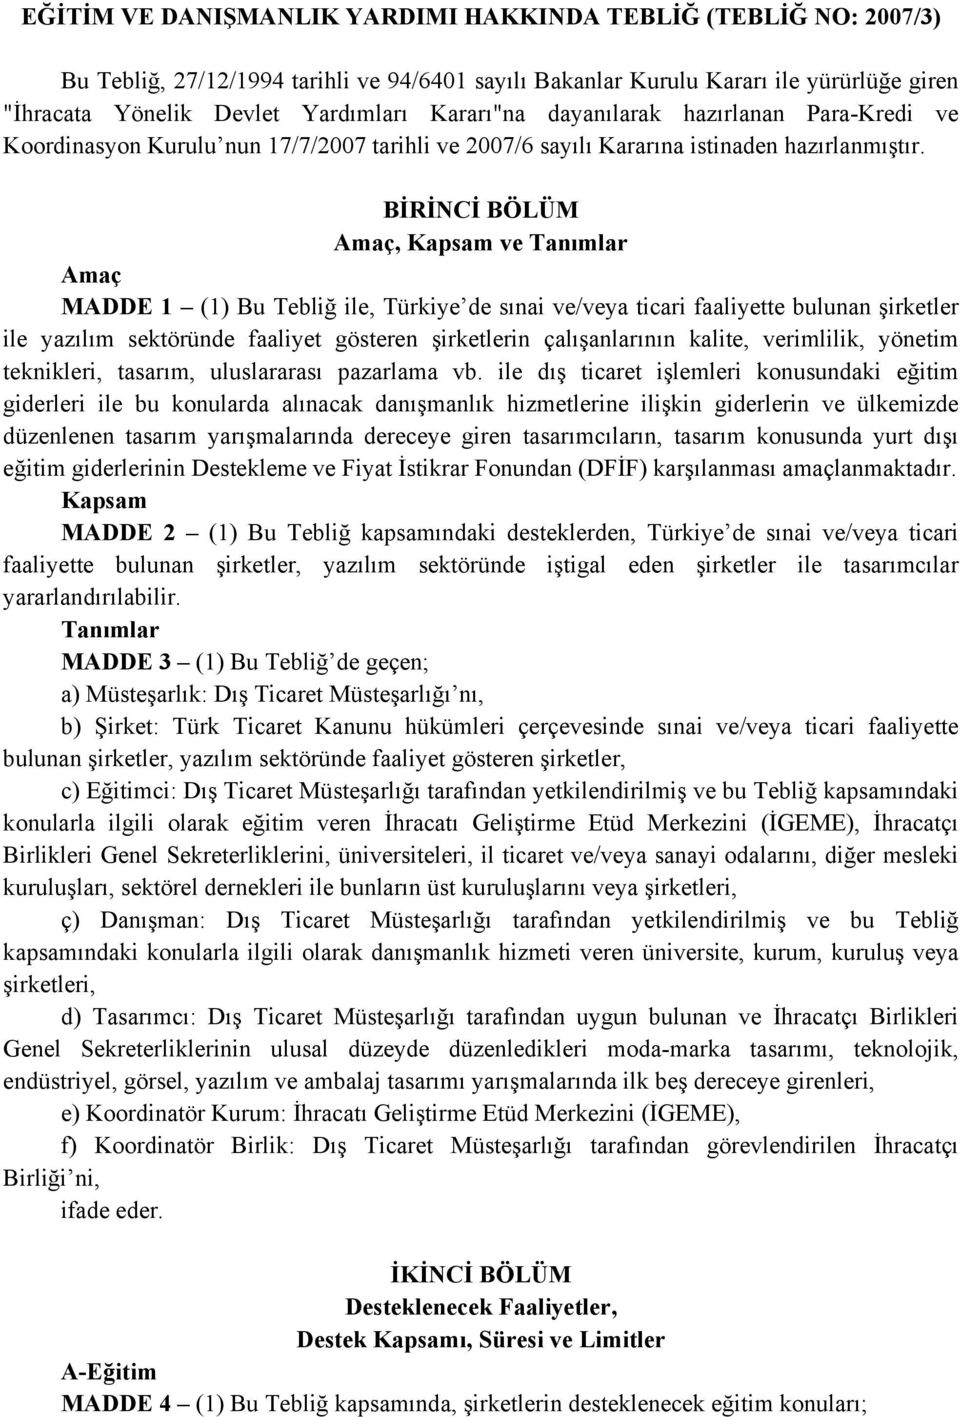 BİRİNCİ BÖLÜM, Kapsam ve Tanımlar MADDE 1 (1) Bu Tebliğ ile, Türkiye de sınai ve/veya ticari faaliyette bulunan şirketler ile yazılım sektöründe faaliyet gösteren şirketlerin çalışanlarının kalite,